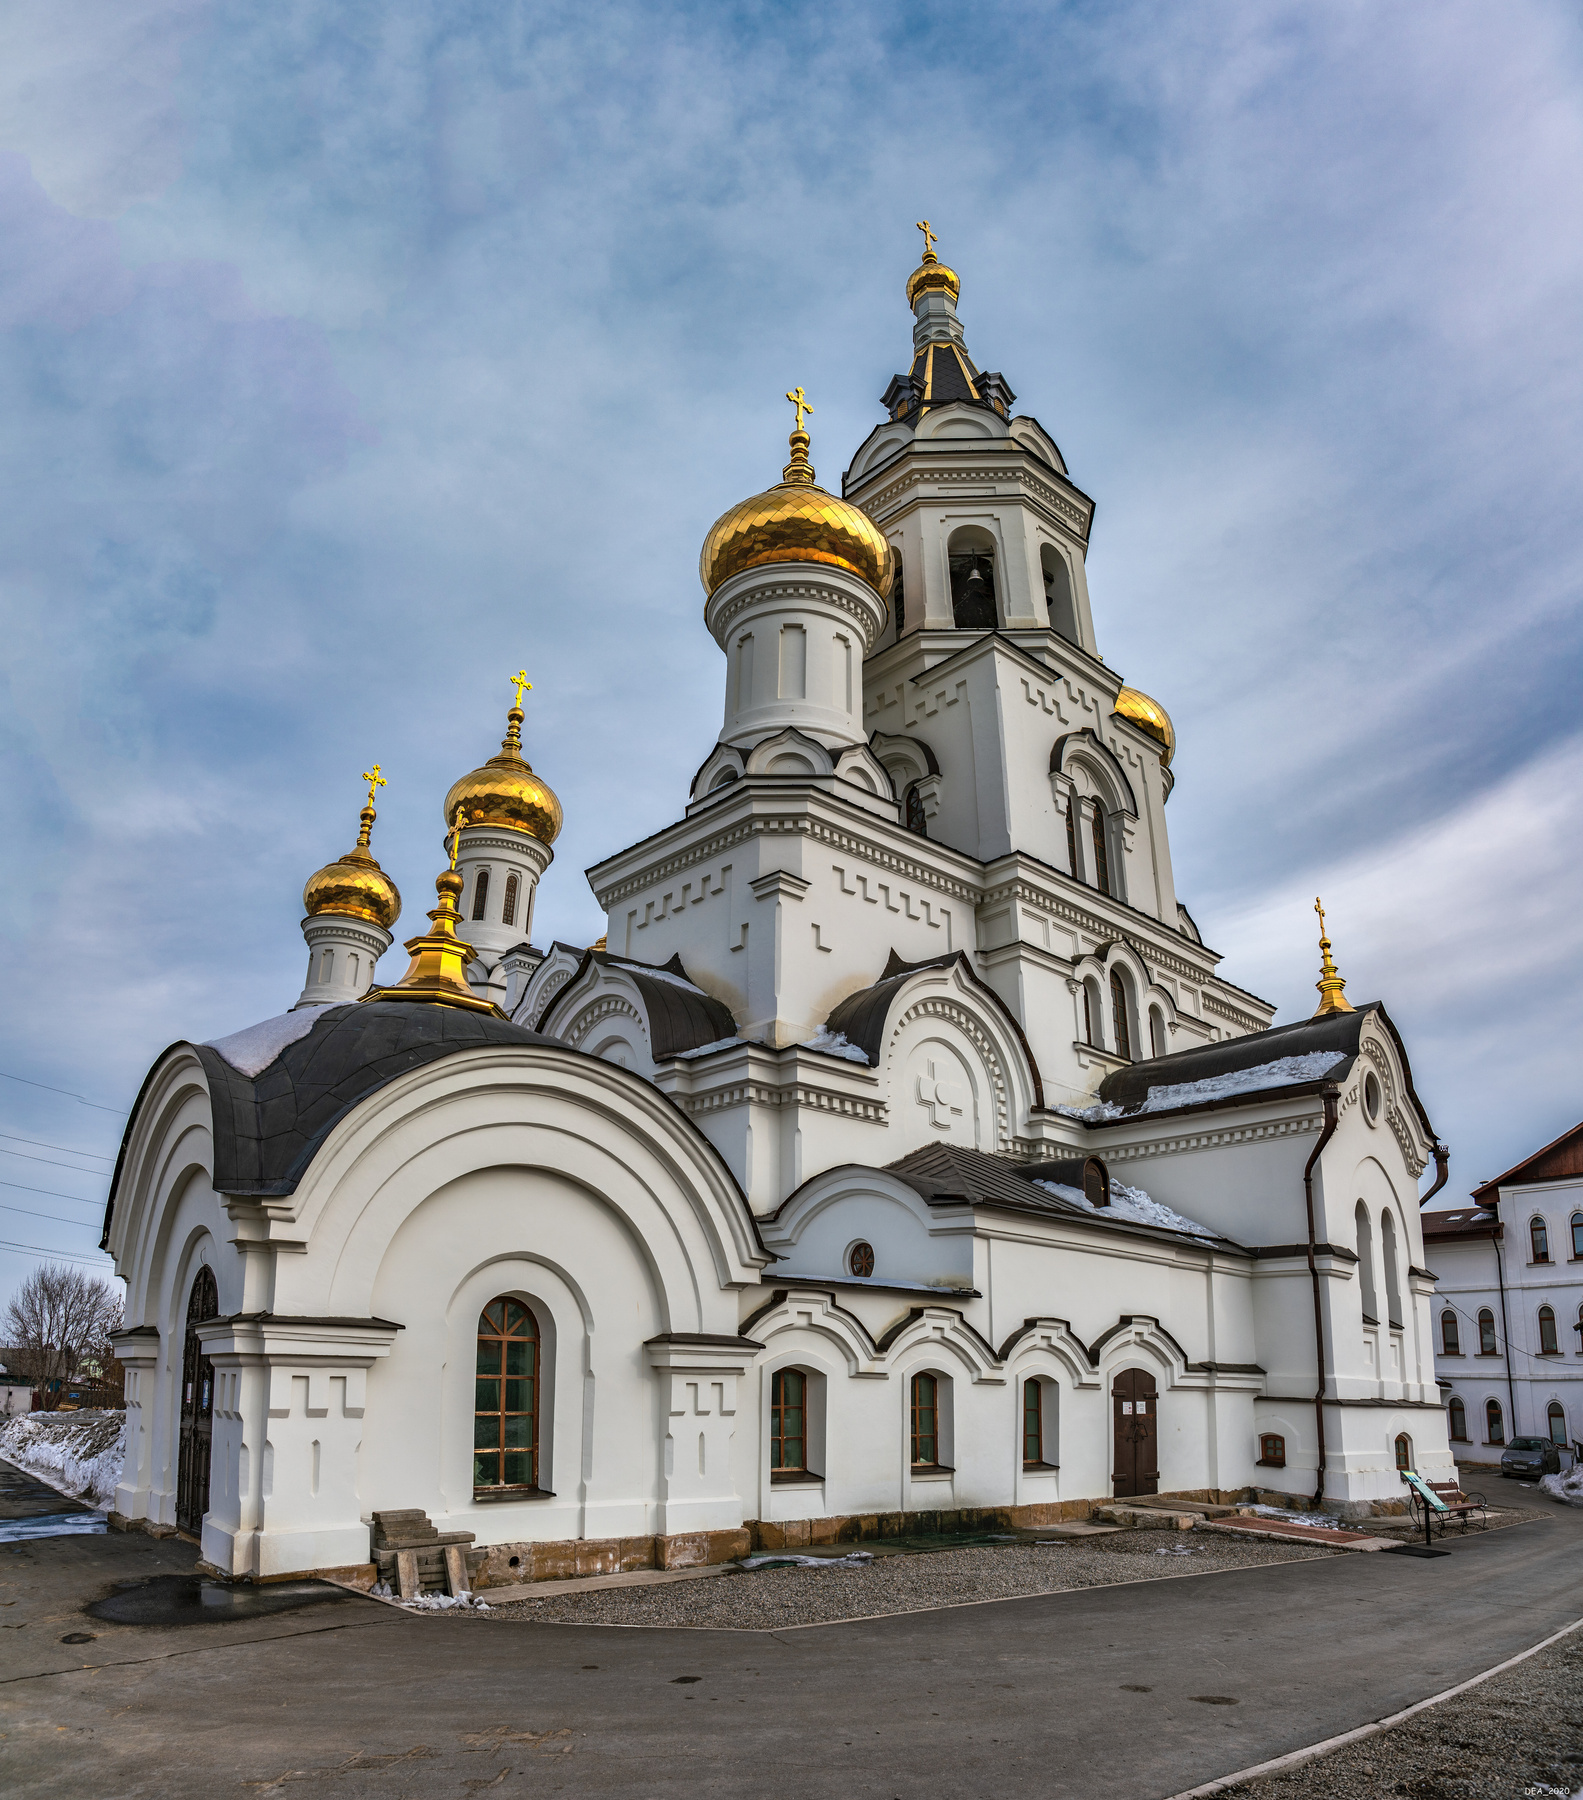 Иркутский. Князе-Владимирский храм был основан в 1888 году 